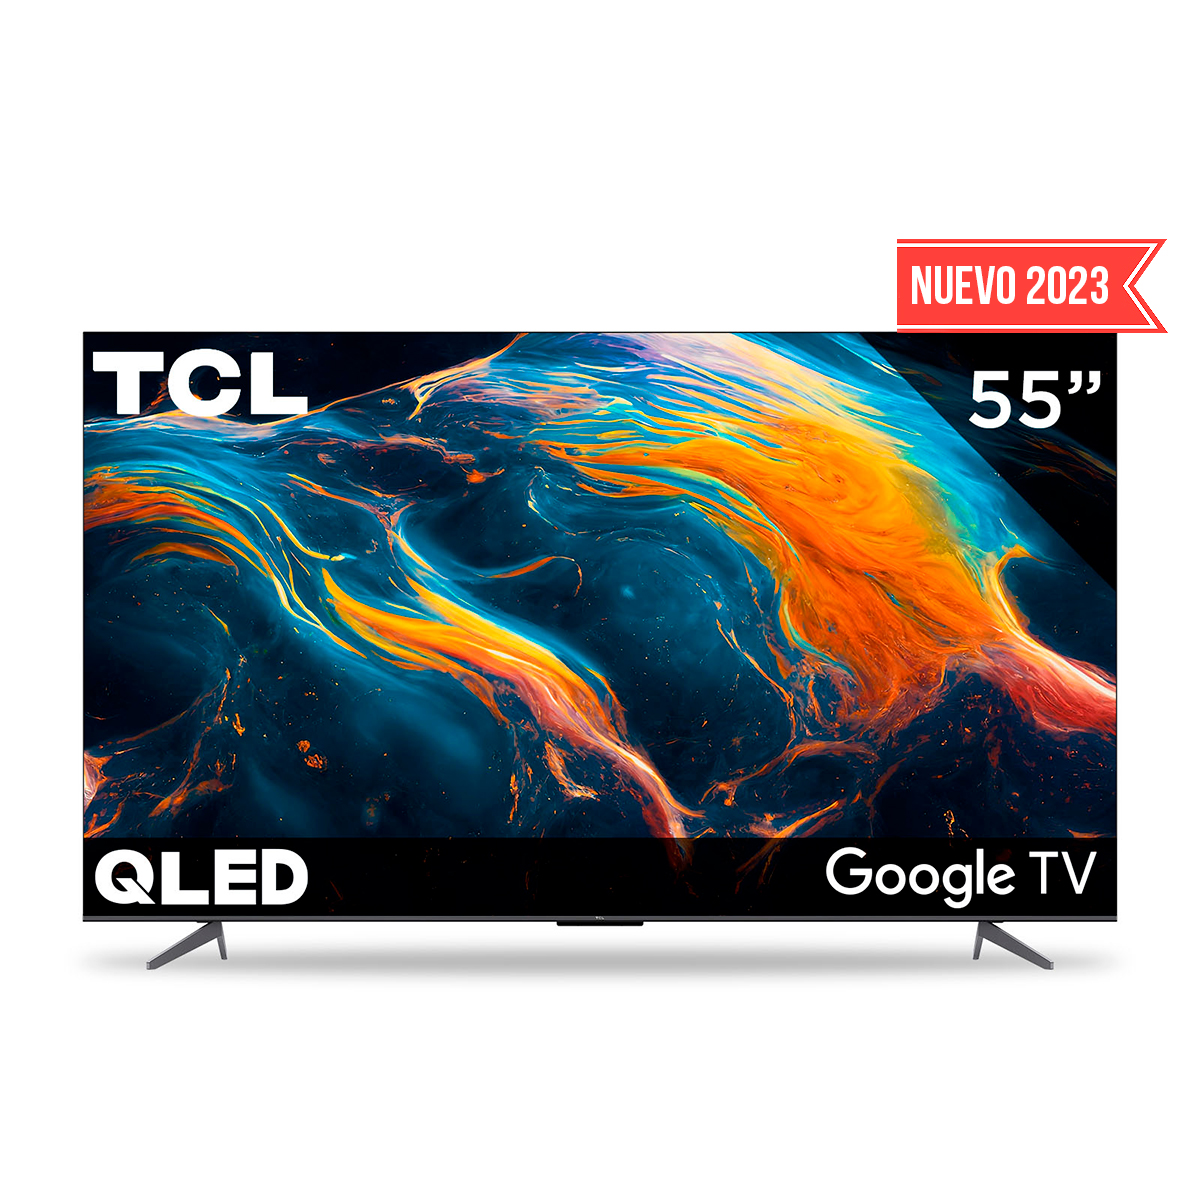 Smart TV TCL 55 pulgadas 4K con descuento en  México por 8,999 pesos:  con Google TV, tecnología QLED, Dolby Vision y Dolby Atmos